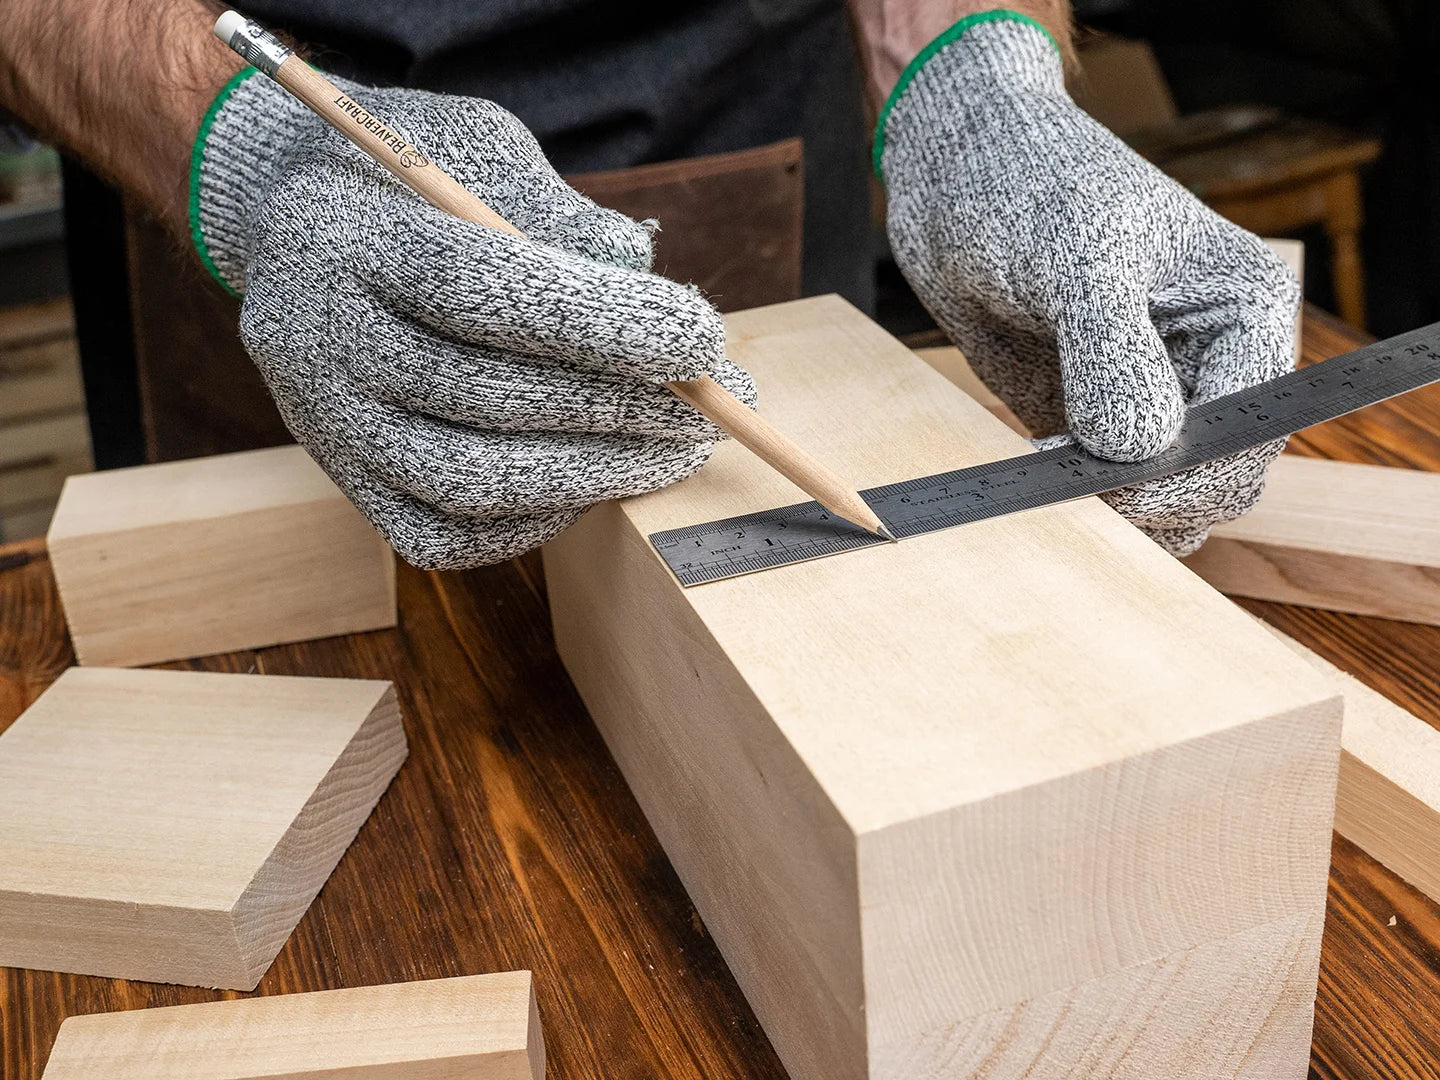 BeaverCraft Whittling Wood Carving Kit S15 Basswood Carving Blocks Set BW10  Wood Carving Tools Set Balsa Wood Blocks